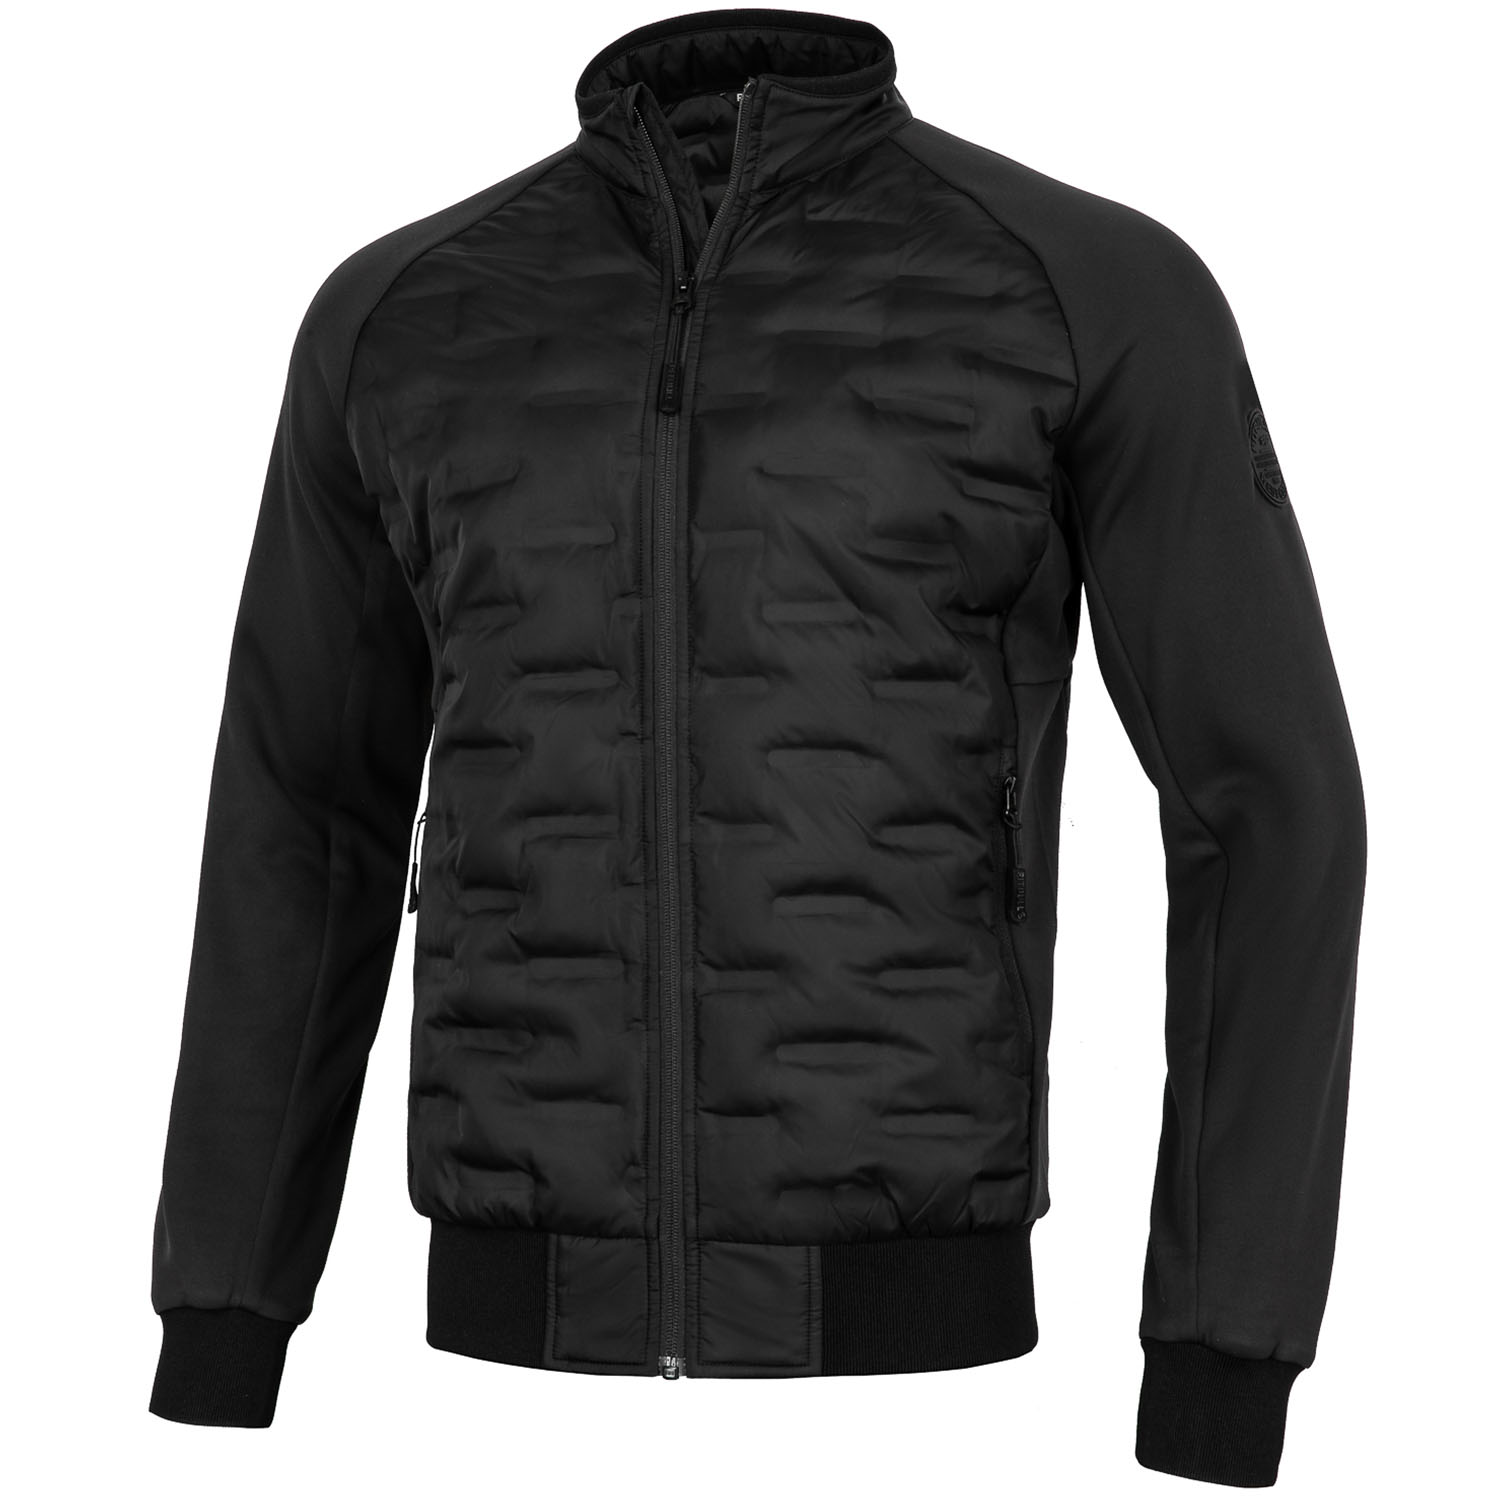 Pit Bull West Coast Jacket, Padded Roxton, black, XXXL